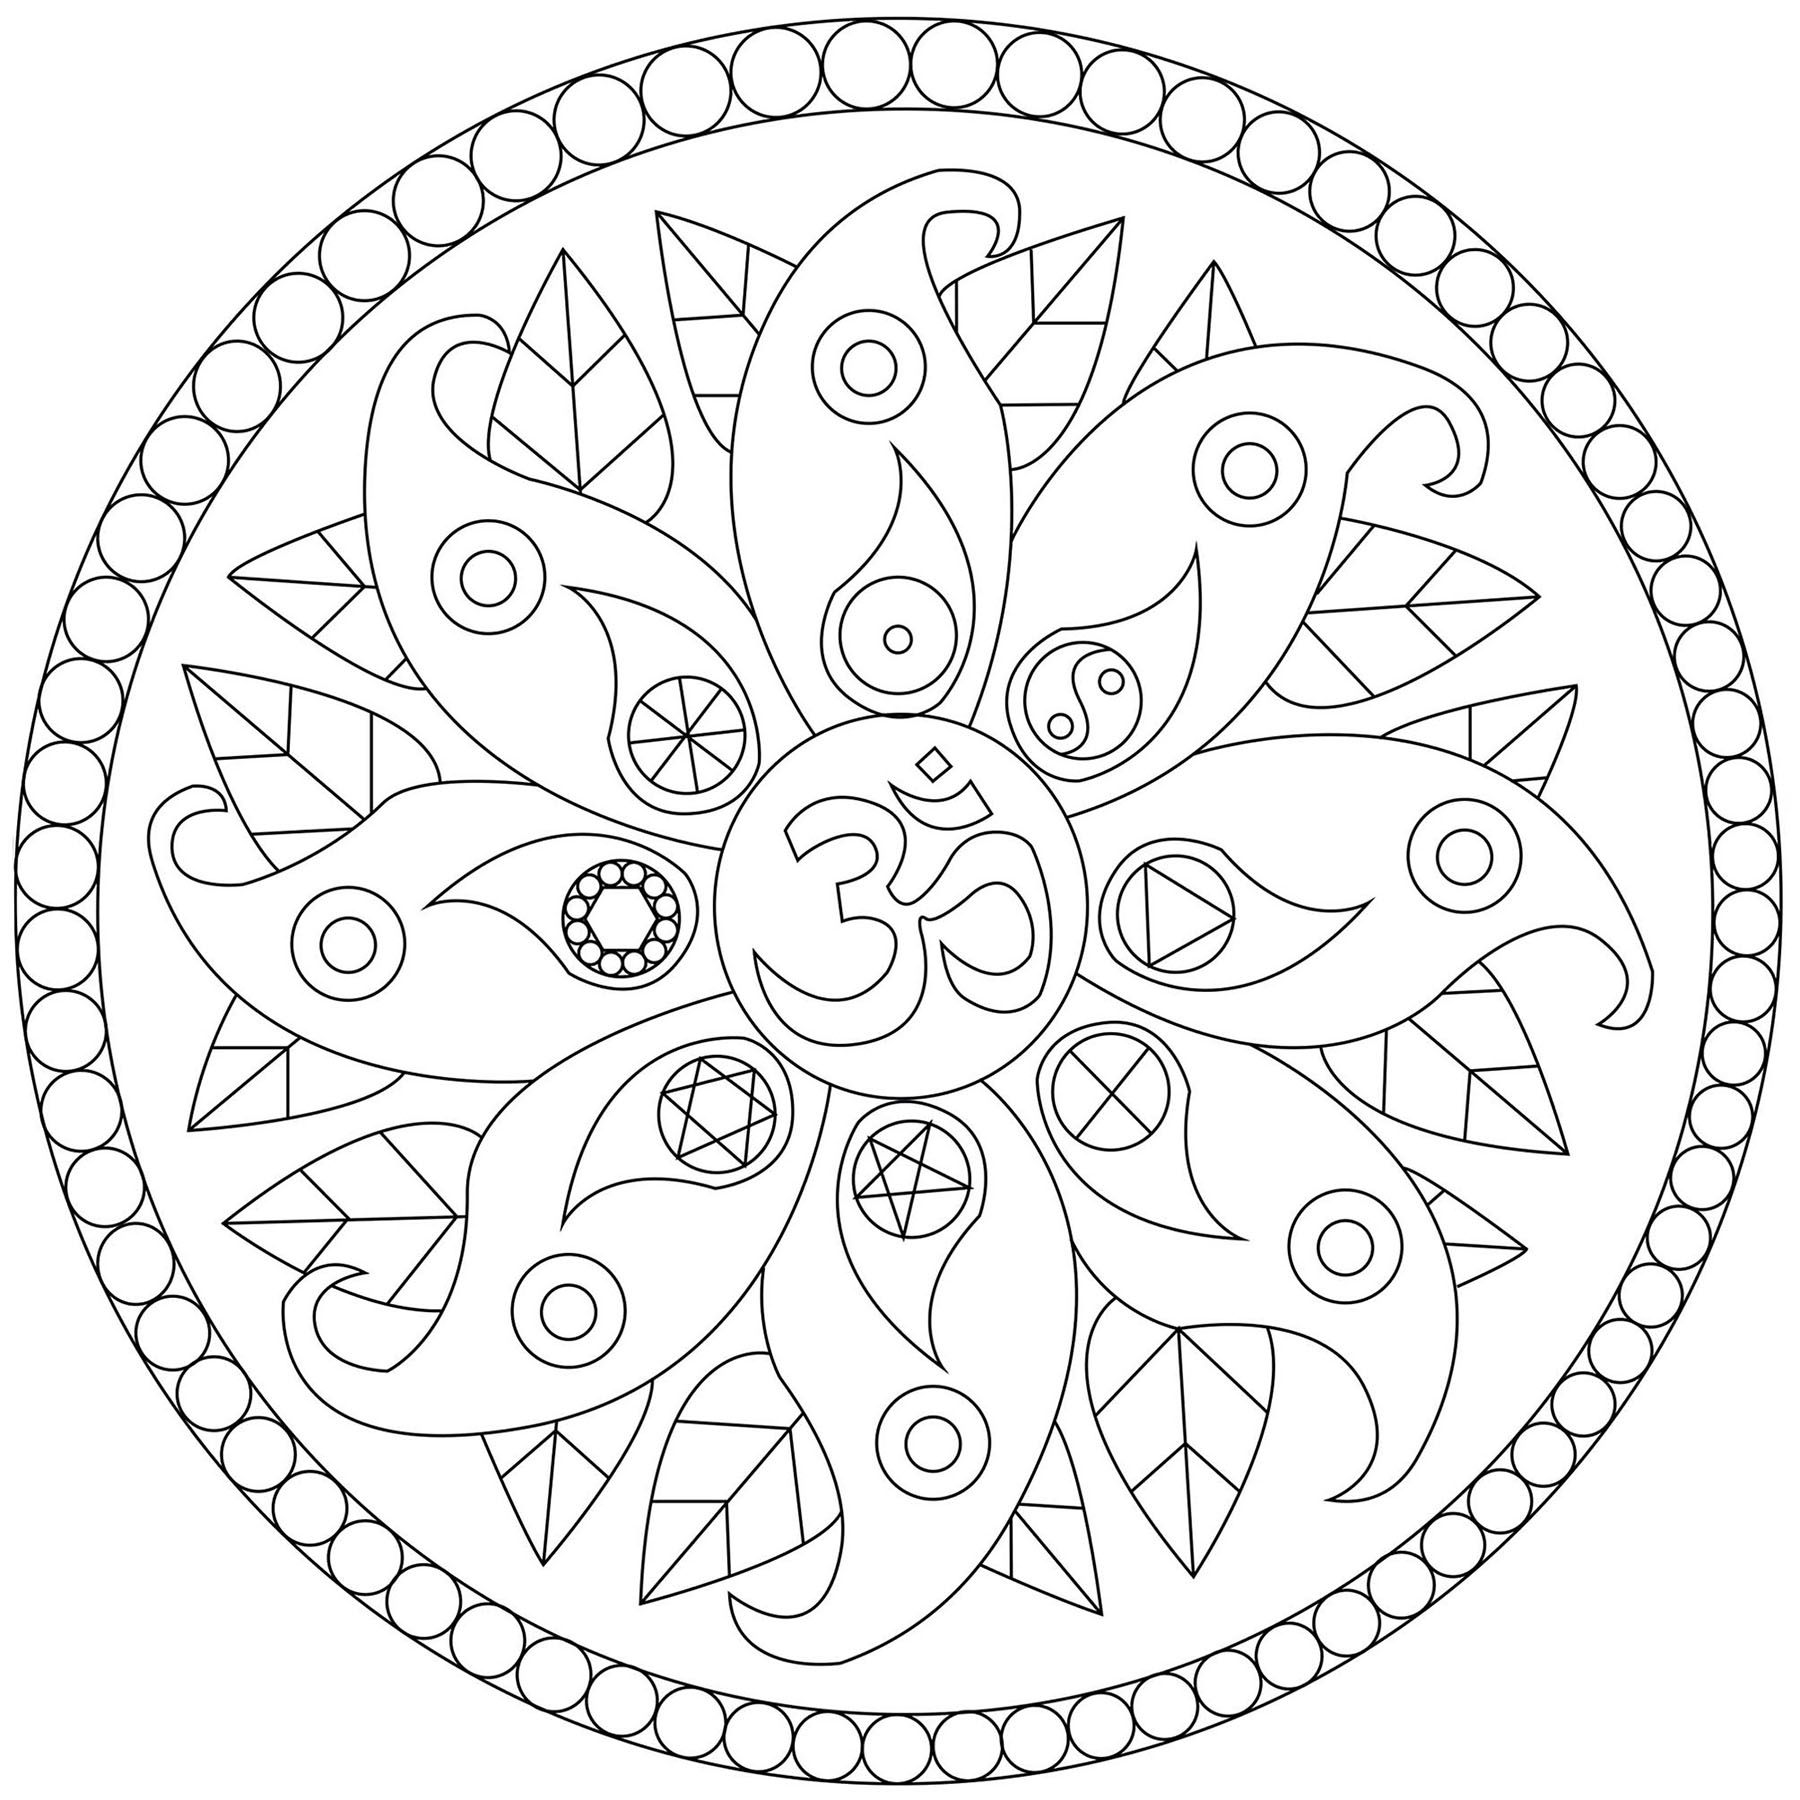 Un mandala con motivos vegetales y diversos símbolos como el Yin y el Yang, Artista : Caillou